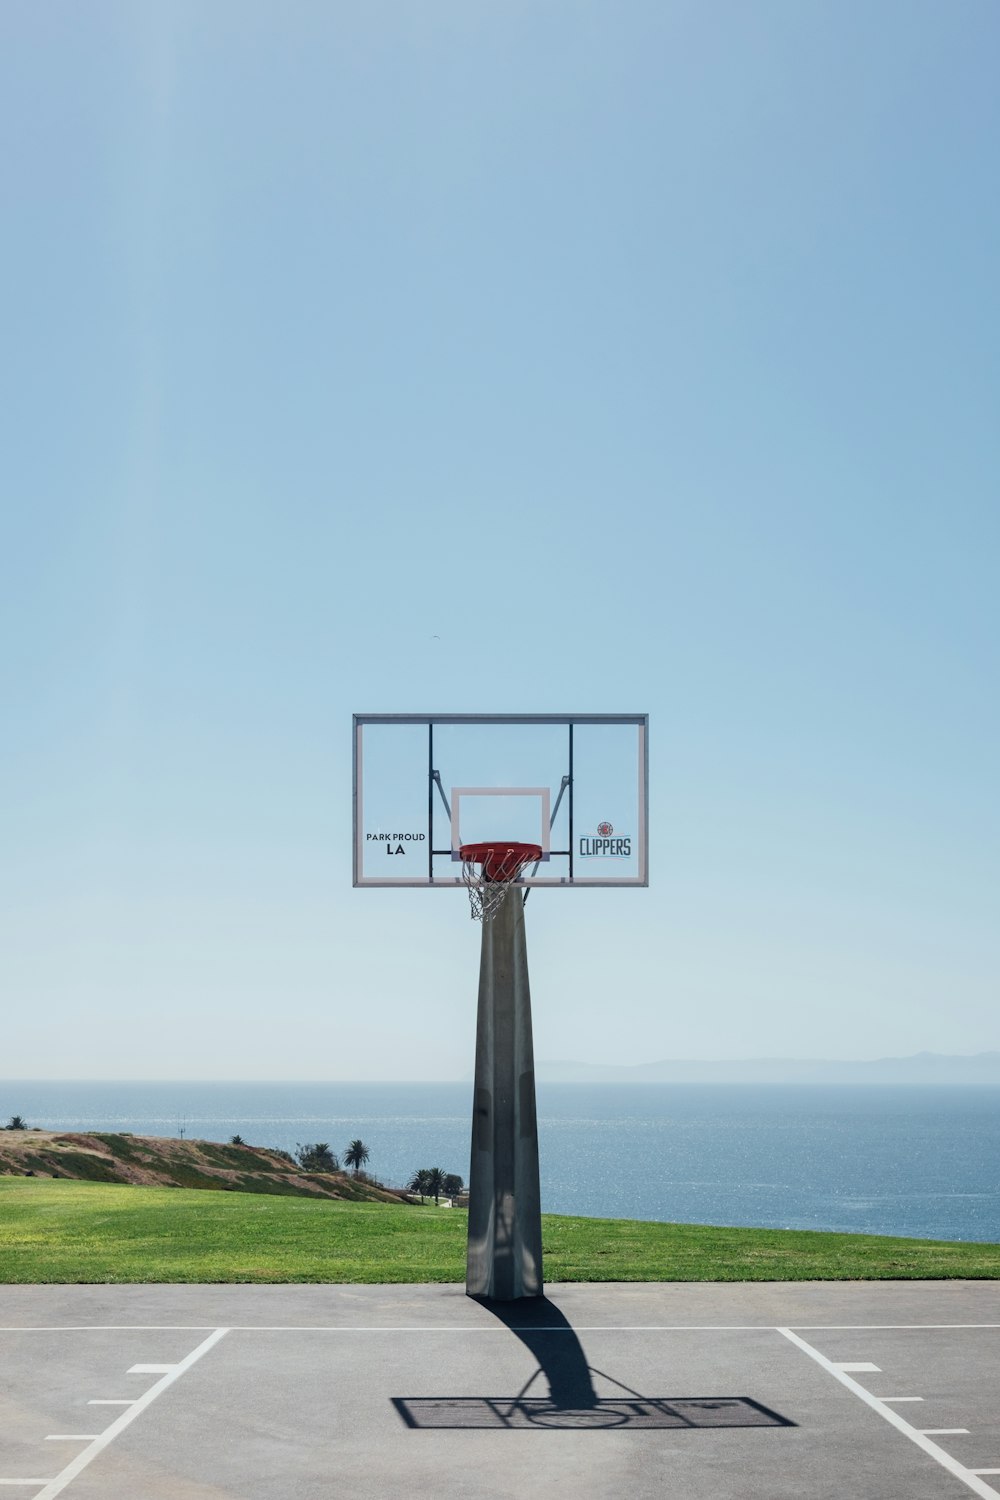 Basketballplatz im Freien in der Nähe des Gewässers